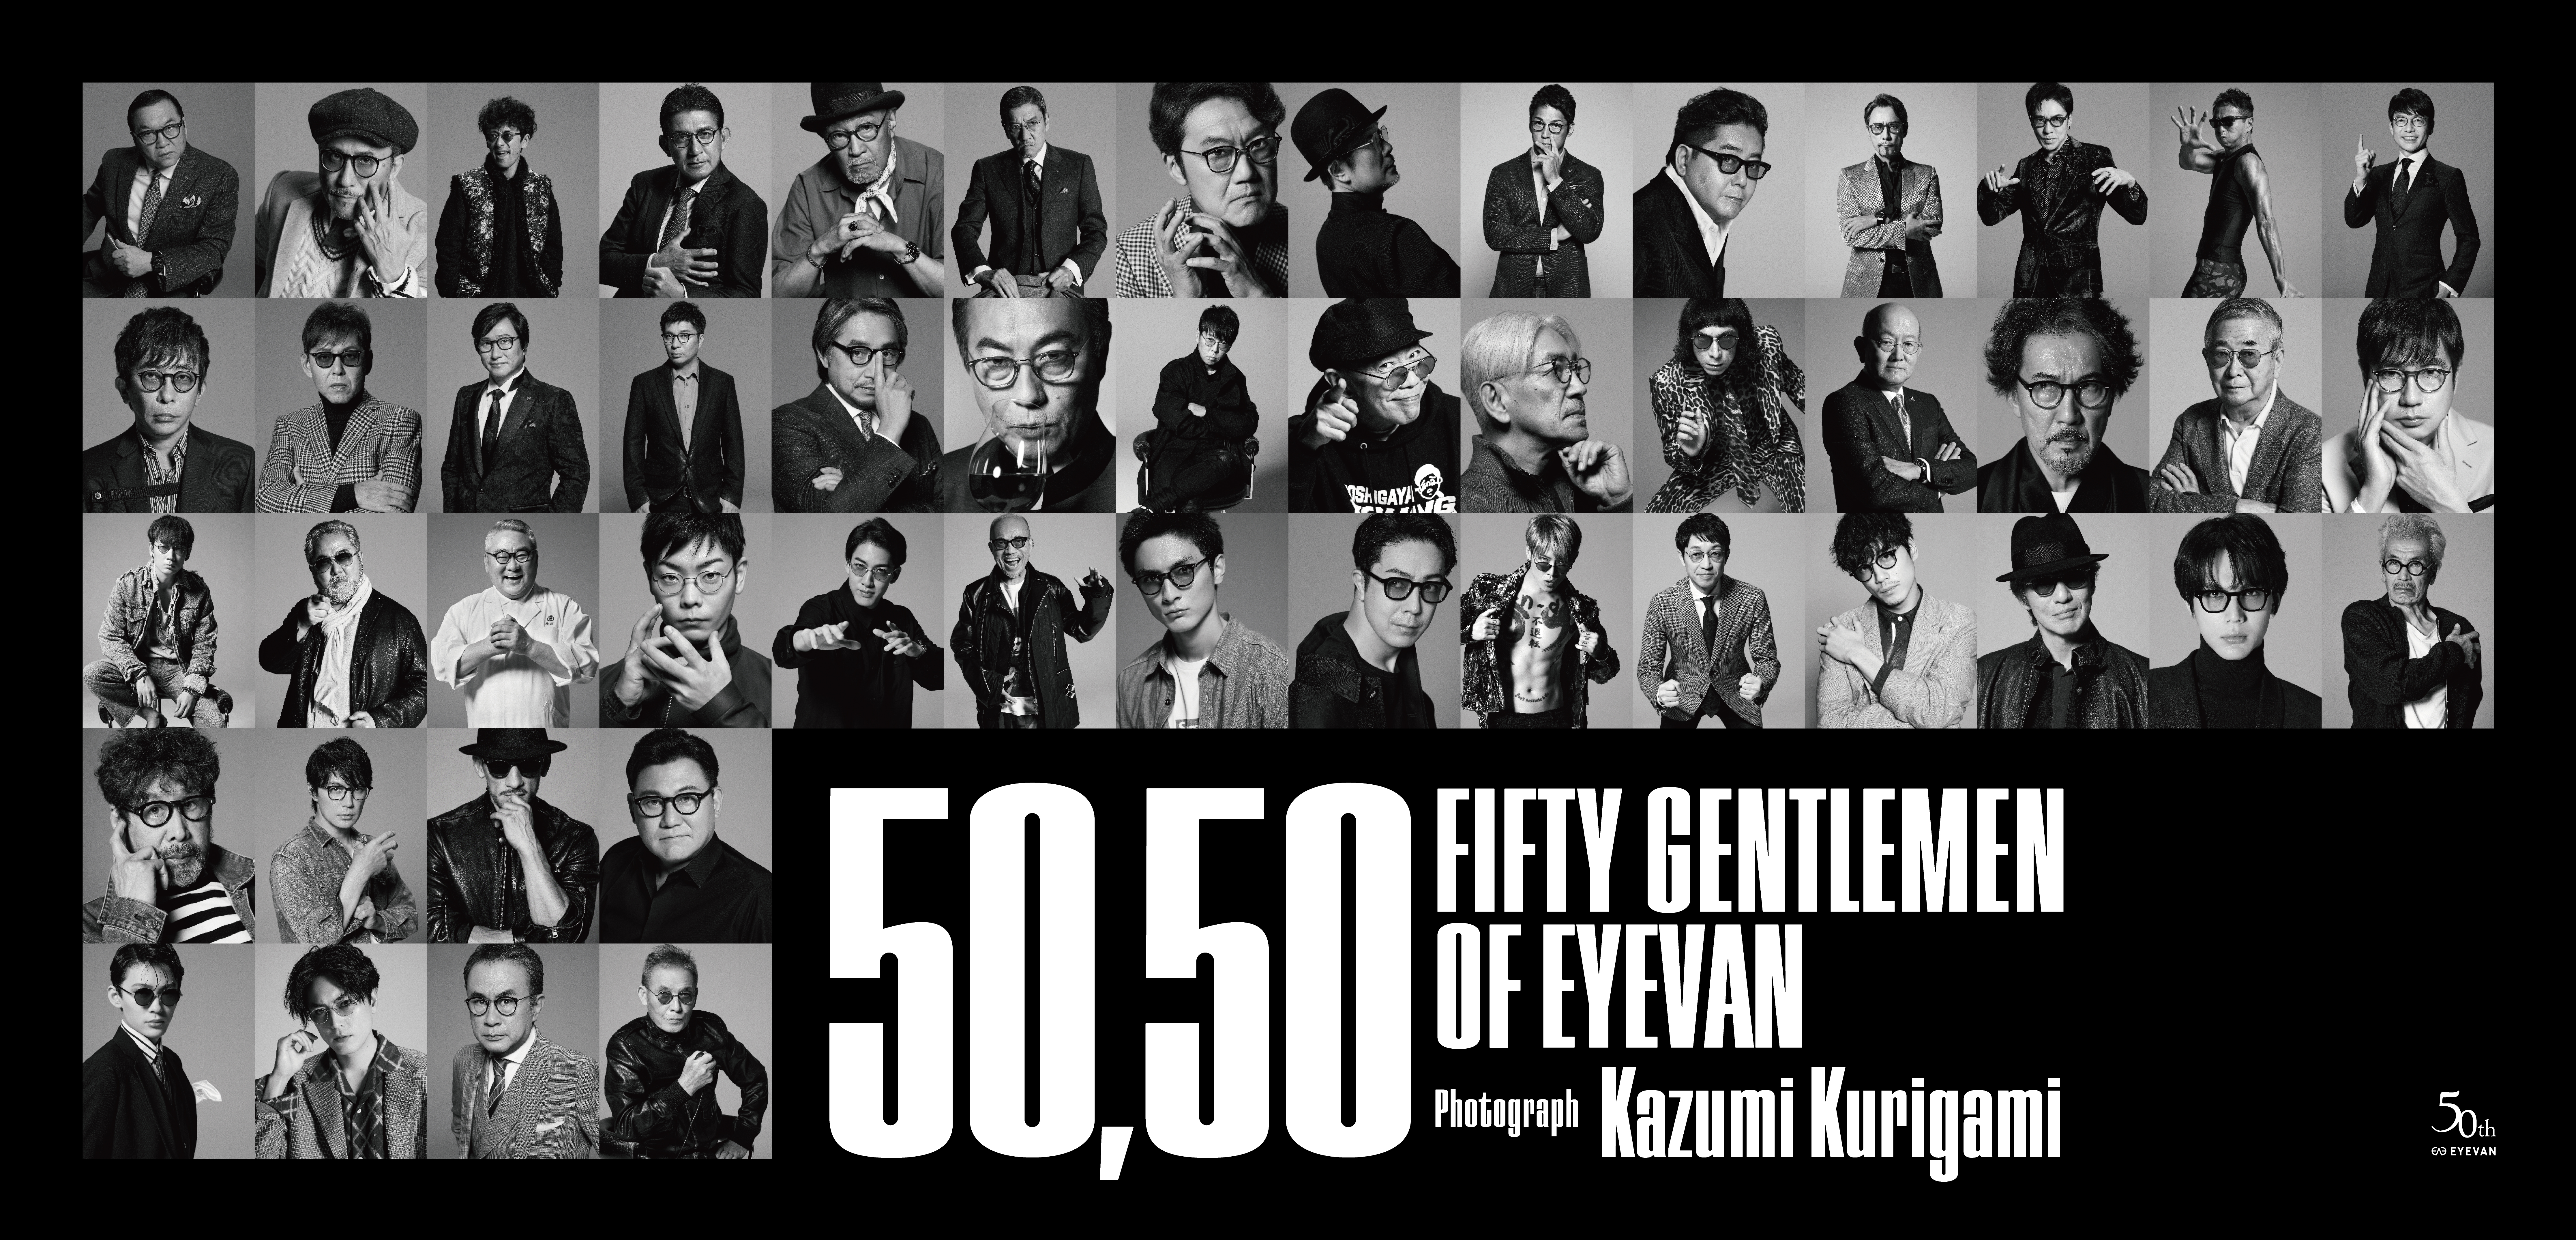 写真展「50,50 FIFTY GENTLEMEN OF EYEVAN」開催 | 株式会社アイヴァン